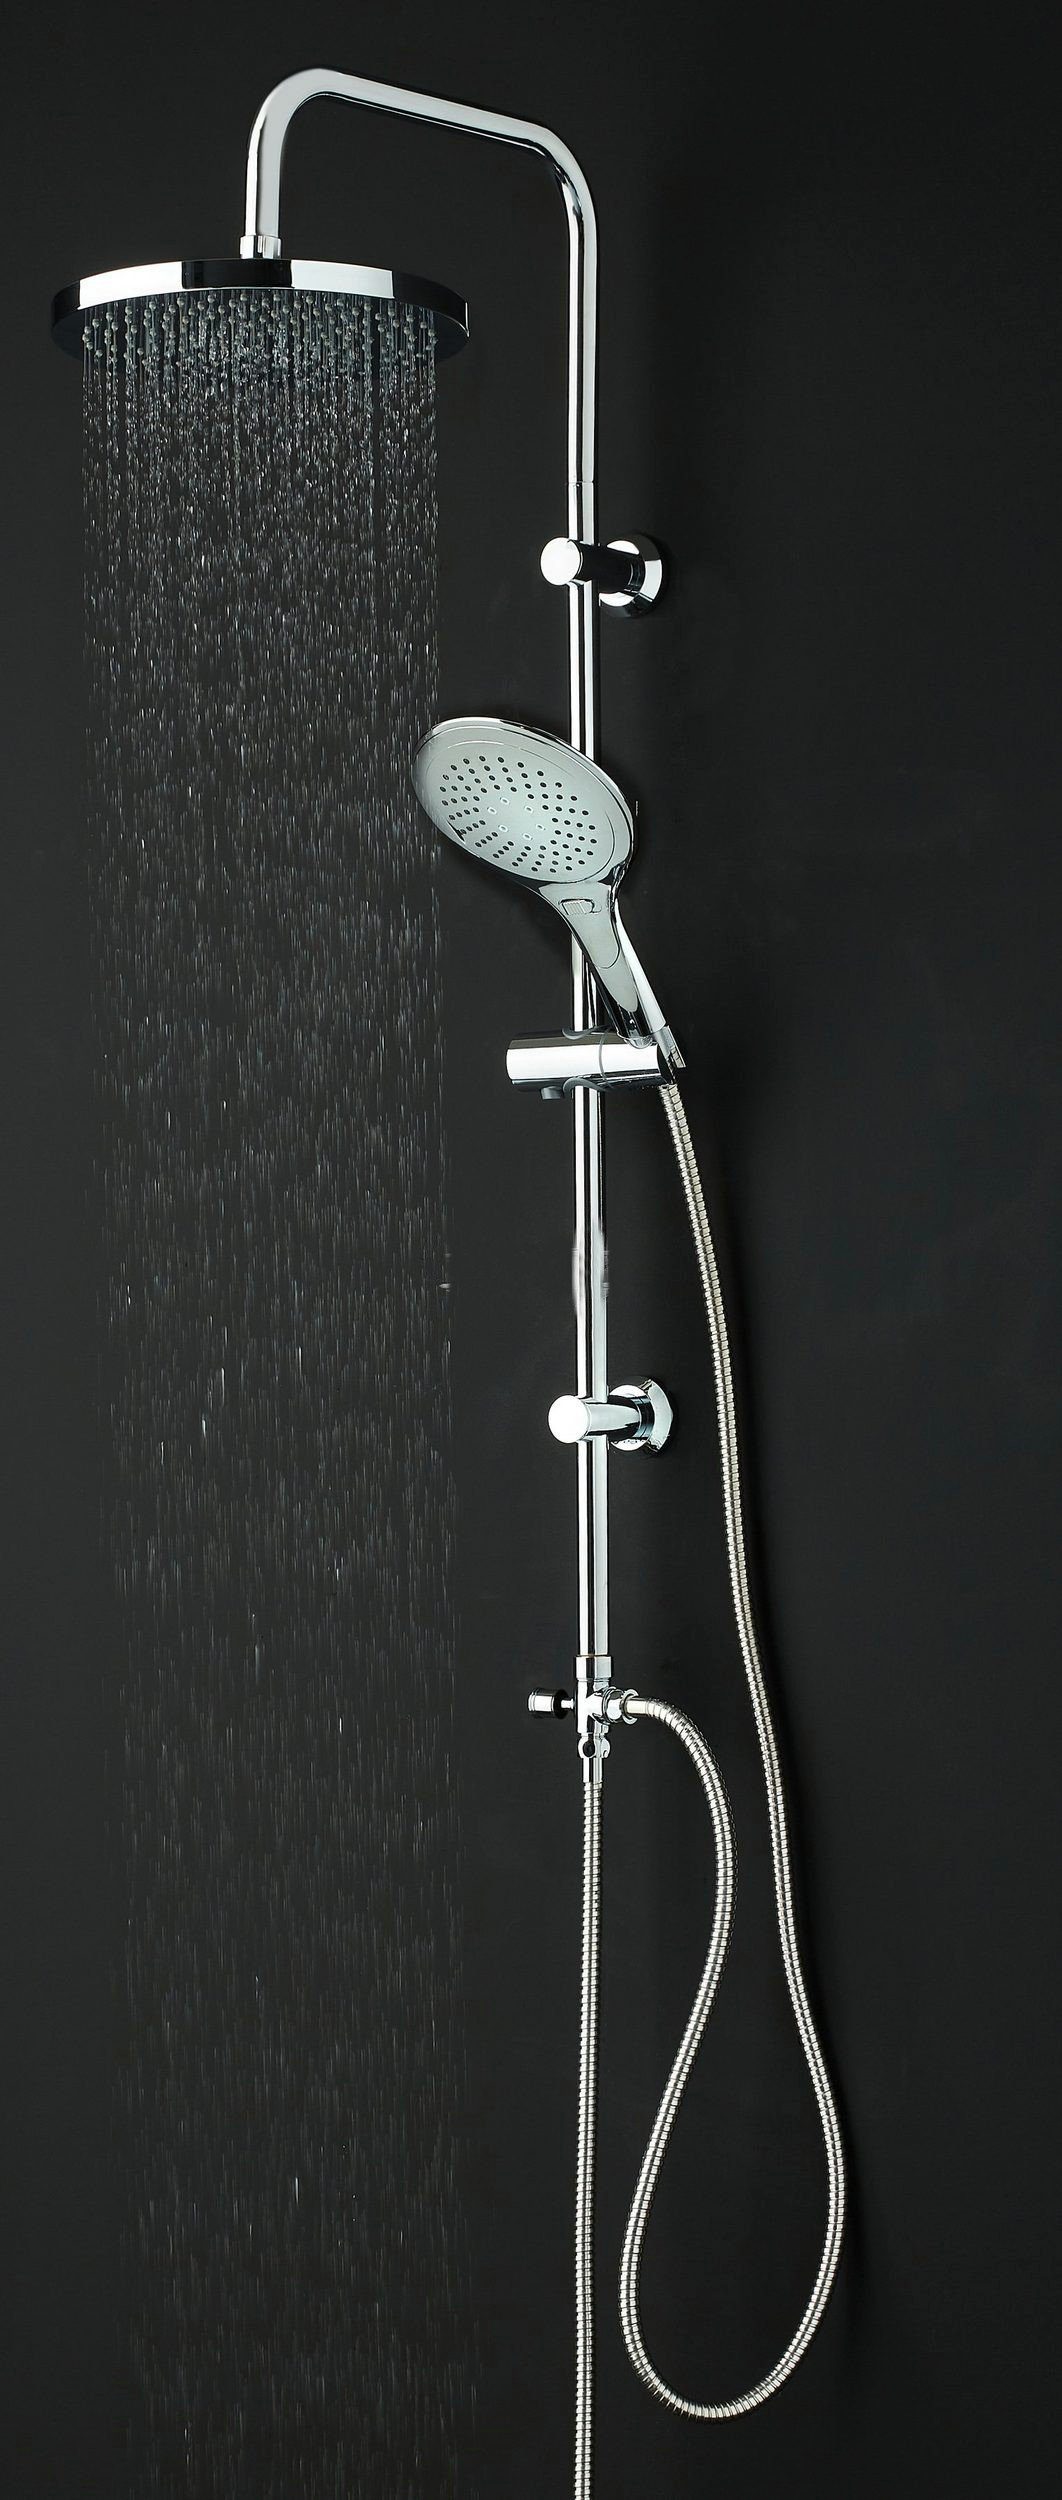 Möbel Duschsystem Dusche mit Regendusche Duschgarnitur Faizee Duschset Handbrause Duschsystem